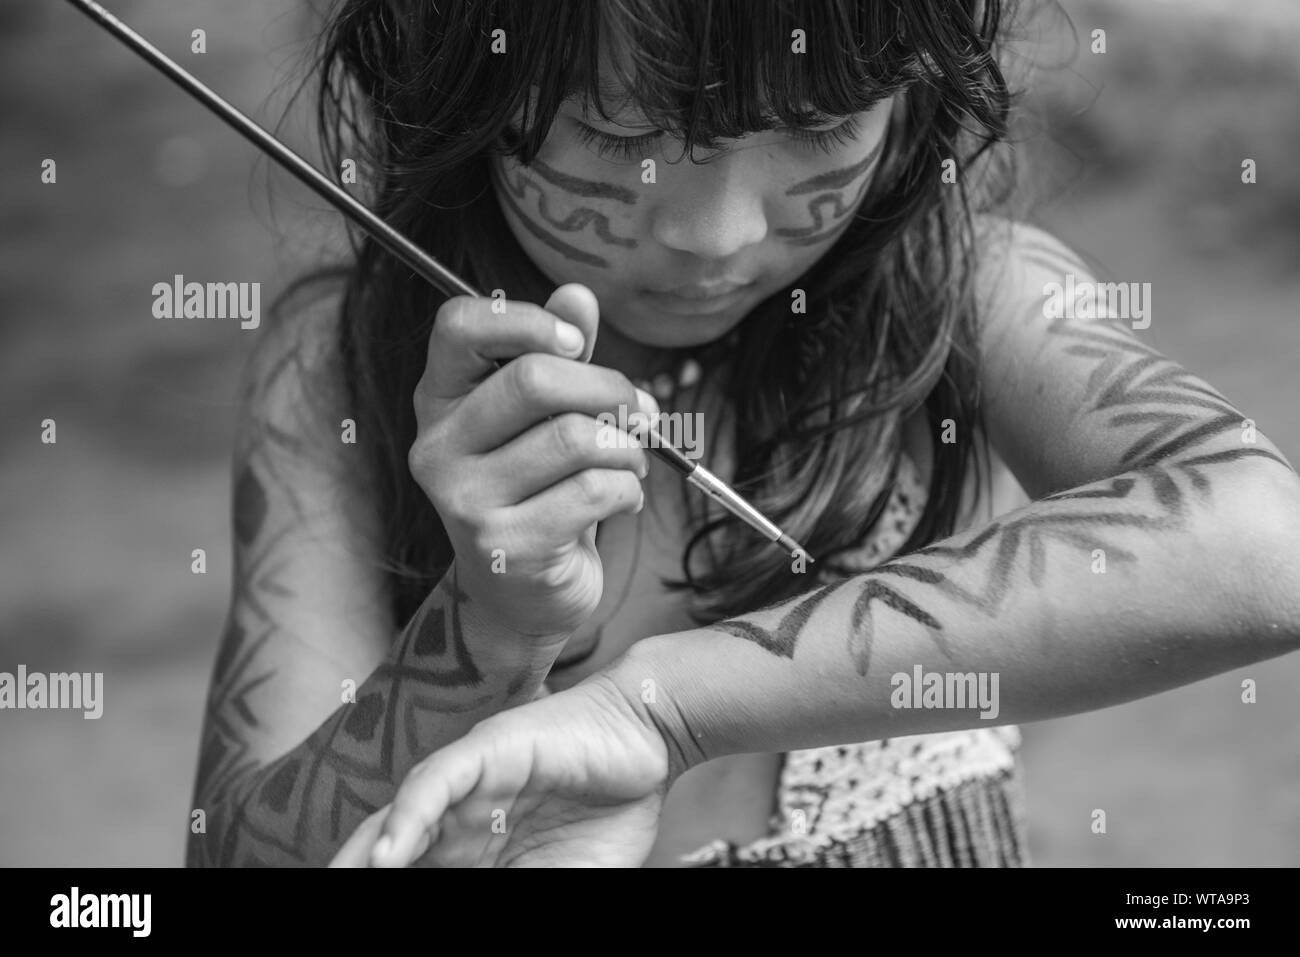 Les jeunes filles autochtones de l'Amazonie brésilienne peindre son corps Banque D'Images